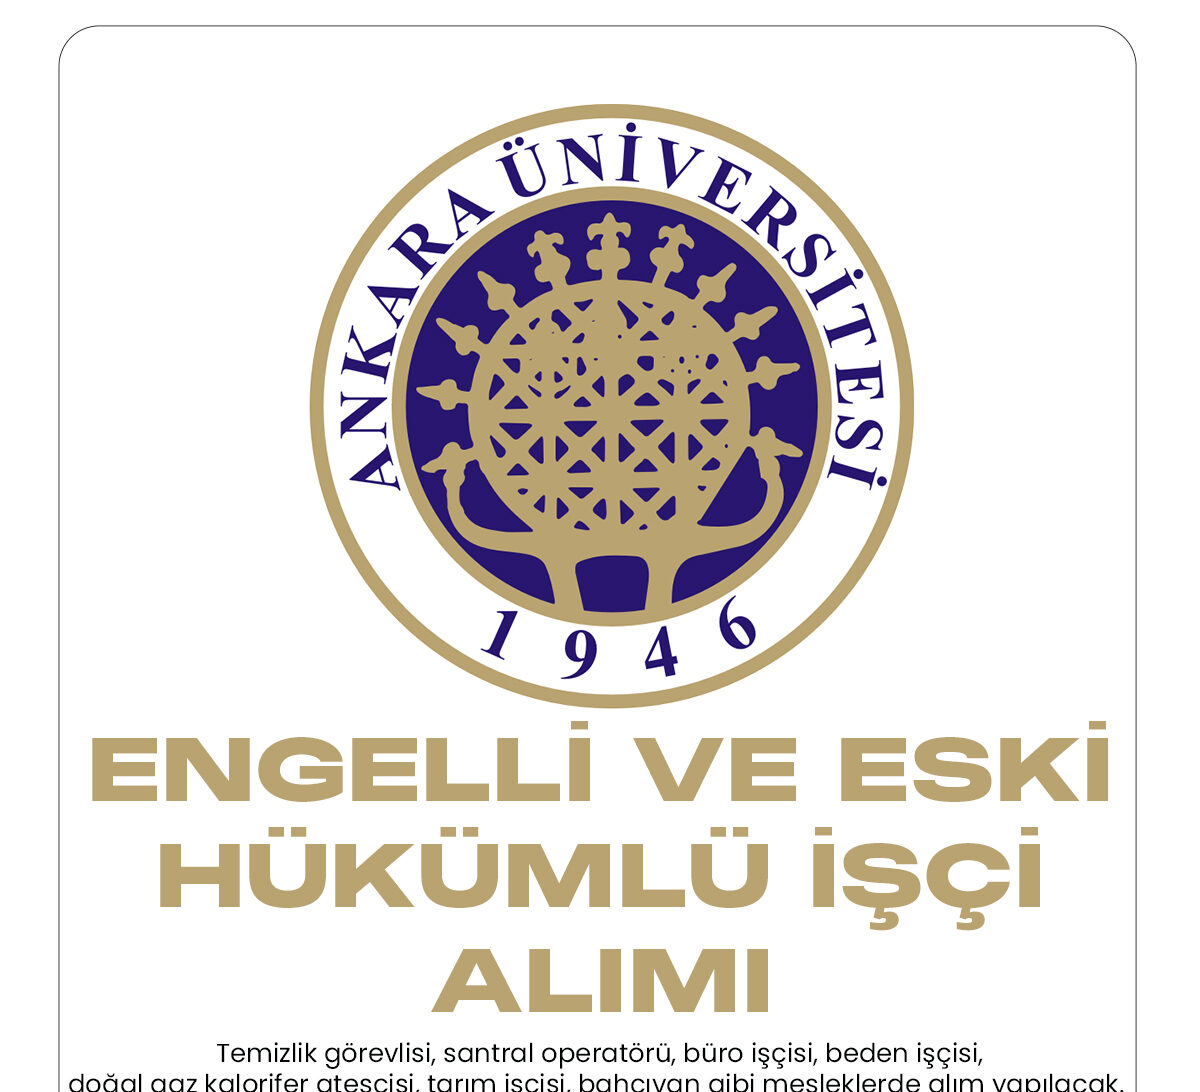 Ankara Üniversitesi engelli ve eski hükümlü işçi alımı başvuru sürecinde sona gelindi.